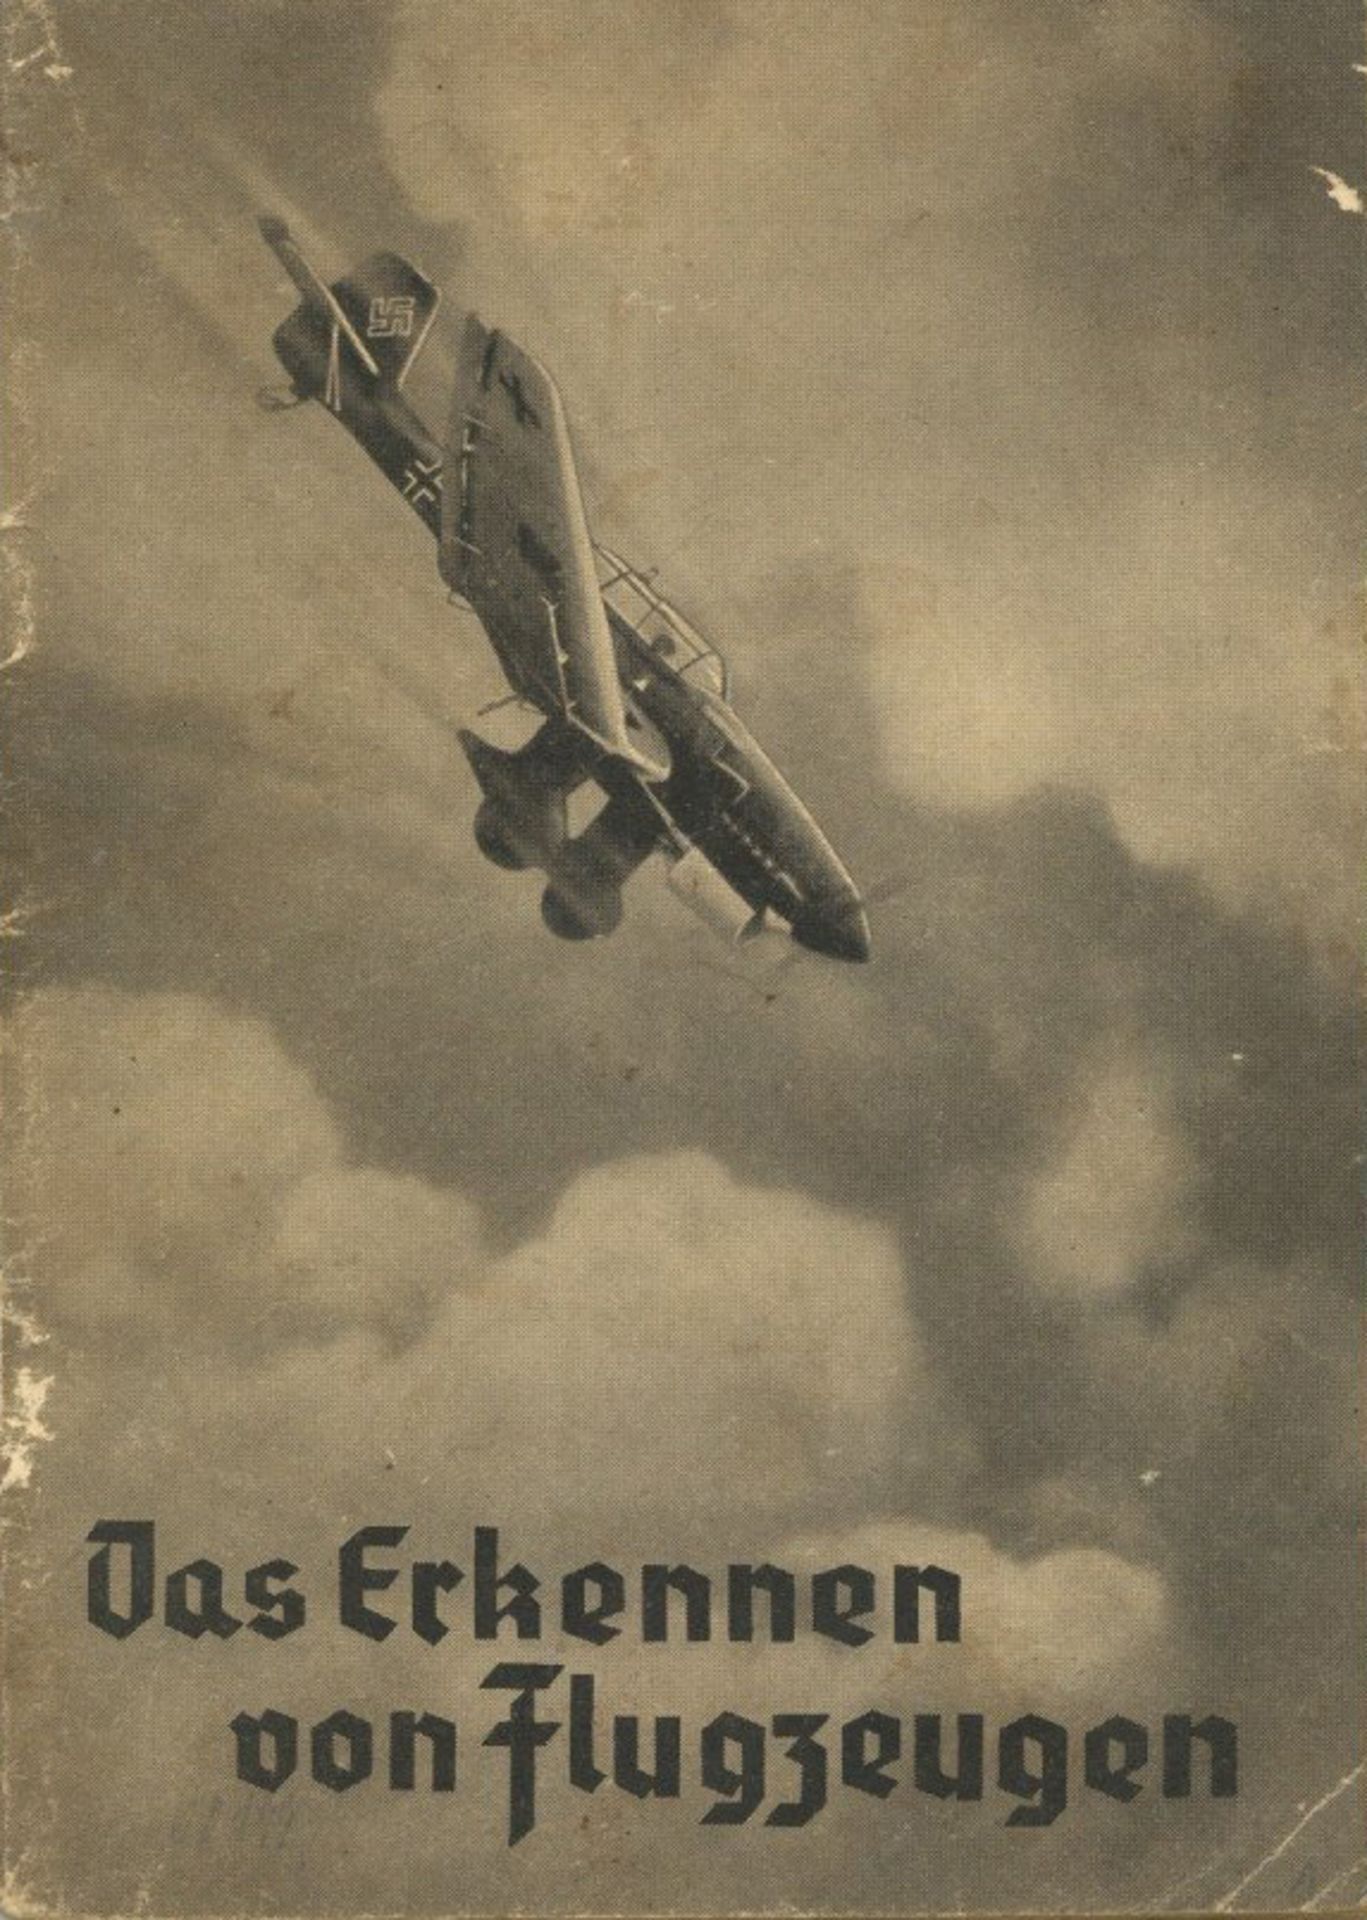 Flugzeug WK II Lehr-Heft Das Erkennen von Flugzeugen von Haarmann, K. 1941, Verlag Heß Braunschweig,